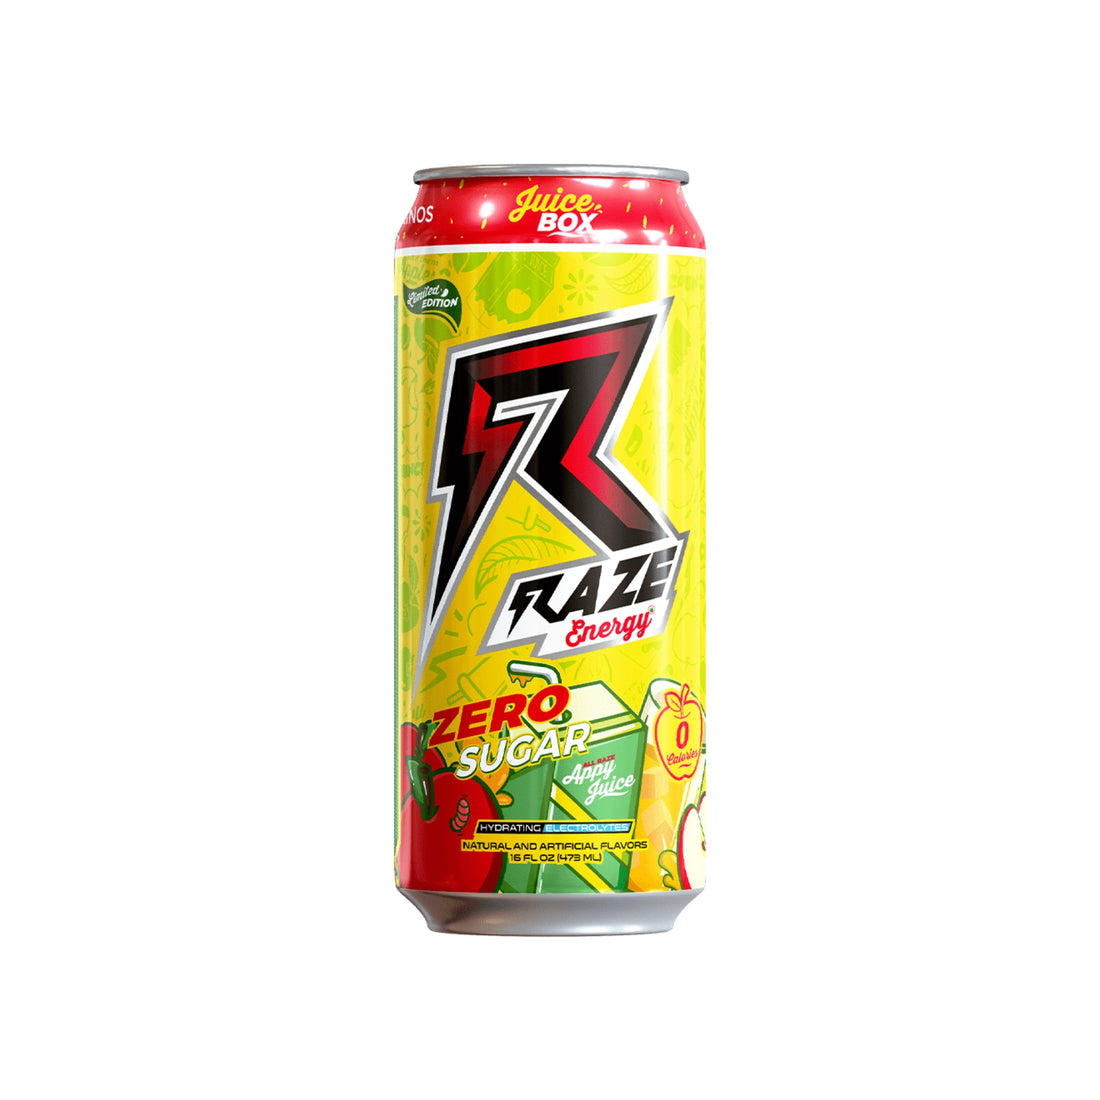 Raze Energy RTD Juice Box